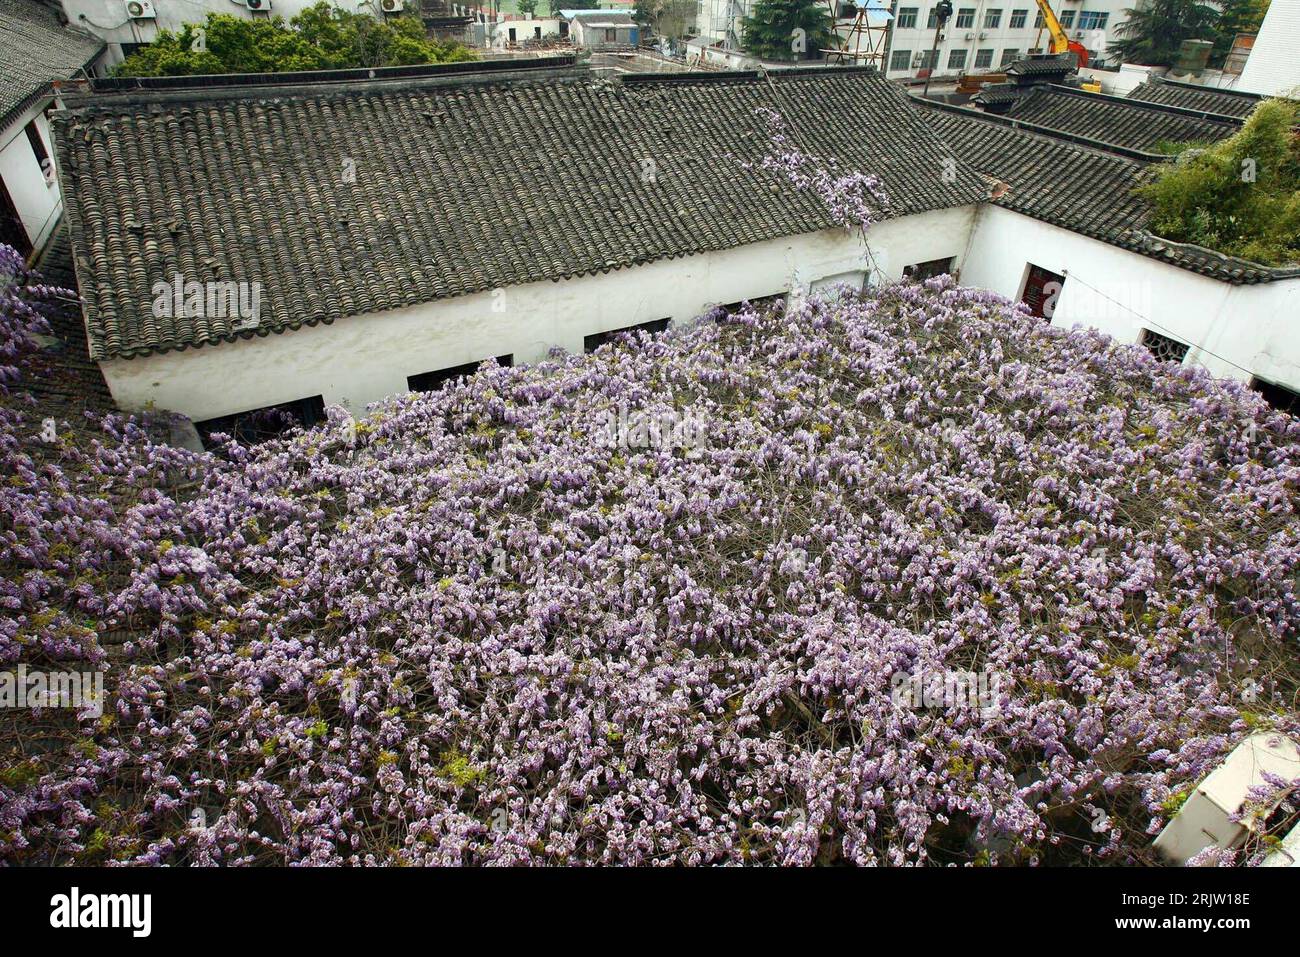 Bildnummer: 51813923  Datum: 05.04.2007  Copyright: imago/Xinhua Blühende Glyzinien in auf einem Dach in Suzhou, China PUBLICATIONxNOTxINxCHN, Gebäude, außen, Außenansicht , Pflanzen; 2007, Suzhou, Glyzinie, Blüte, Blüten, blühend, Dächer; , quer, Kbdig, Totale, China,  , Stock Photo